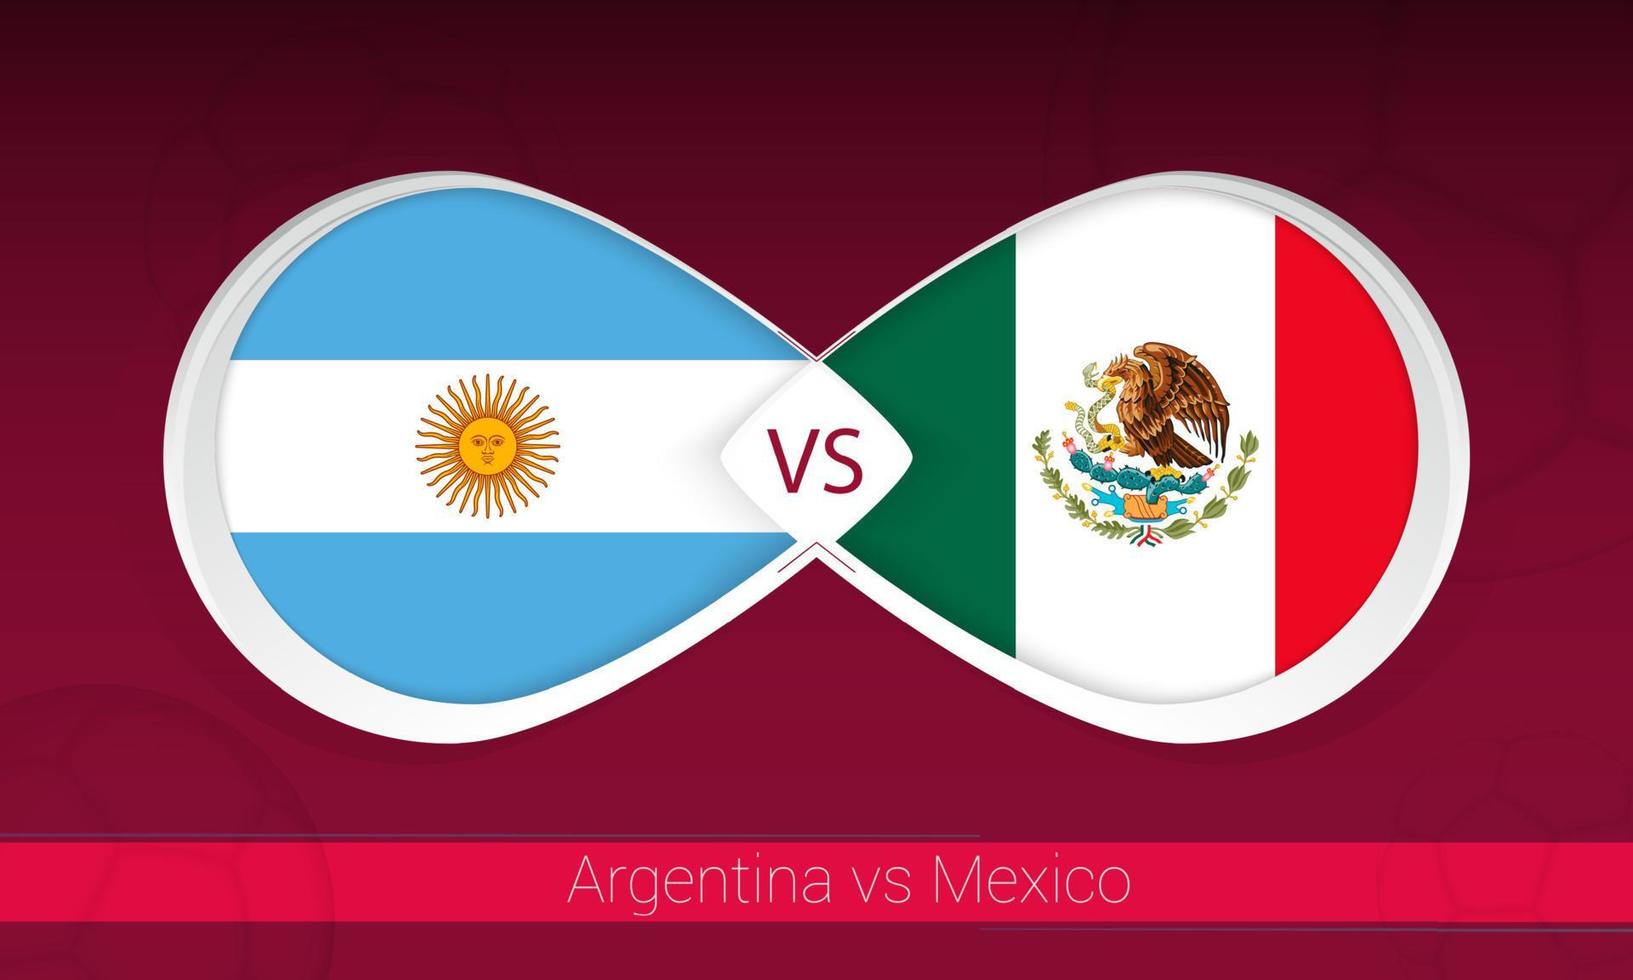 argentina vs messico nella competizione calcistica, gruppo a. contro l'icona sullo sfondo del calcio. vettore